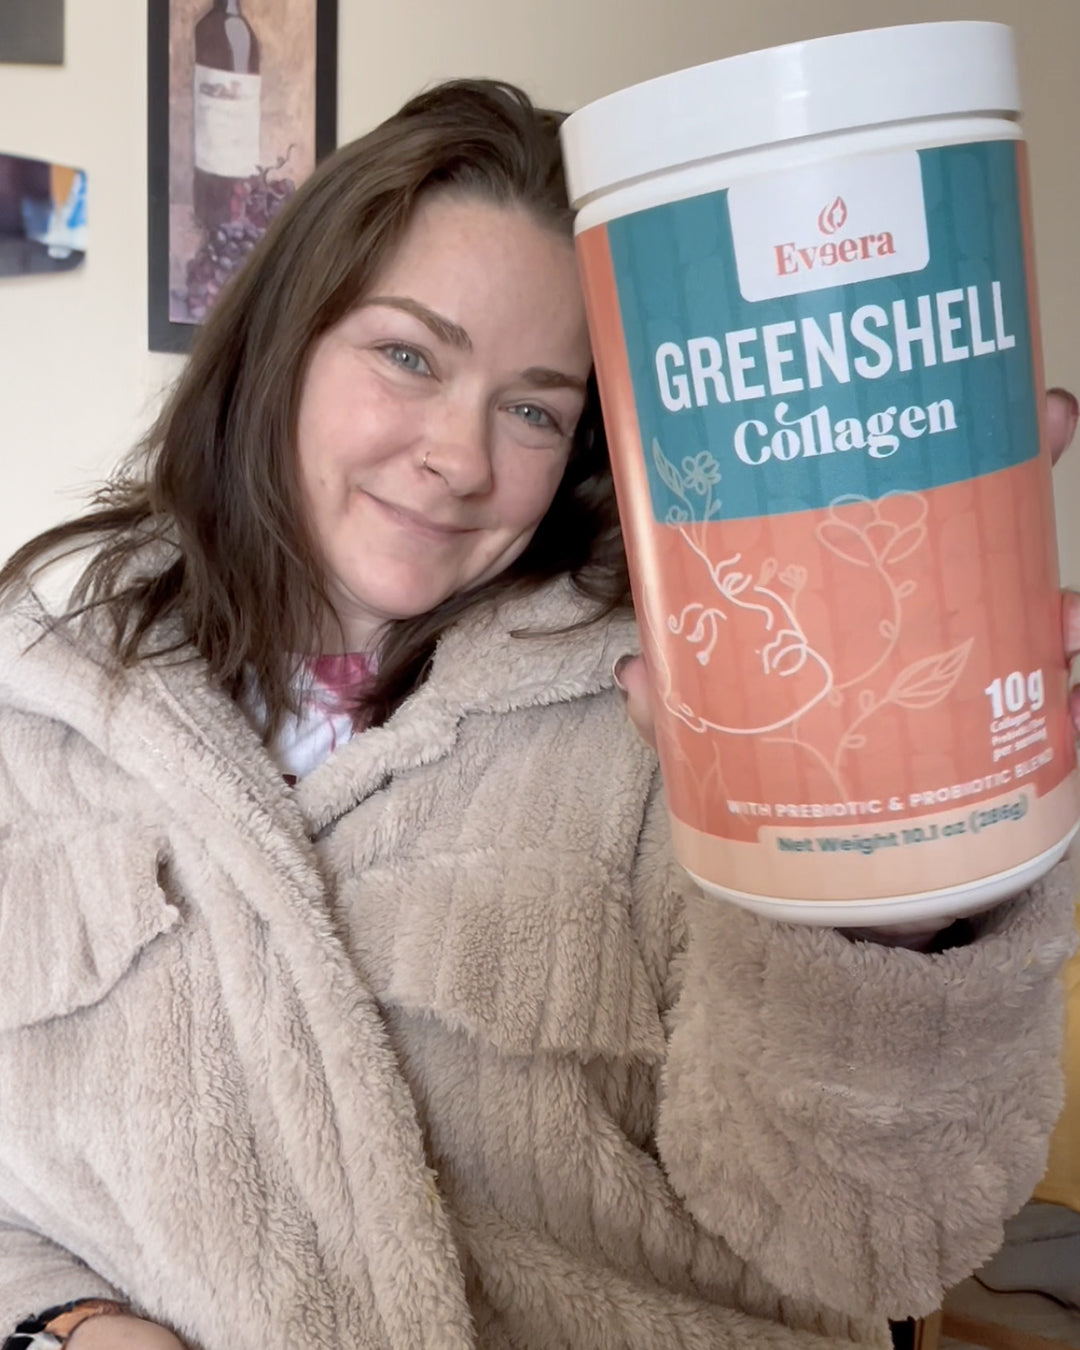 Woman holding a jar of Greenshell Collagen supplement.